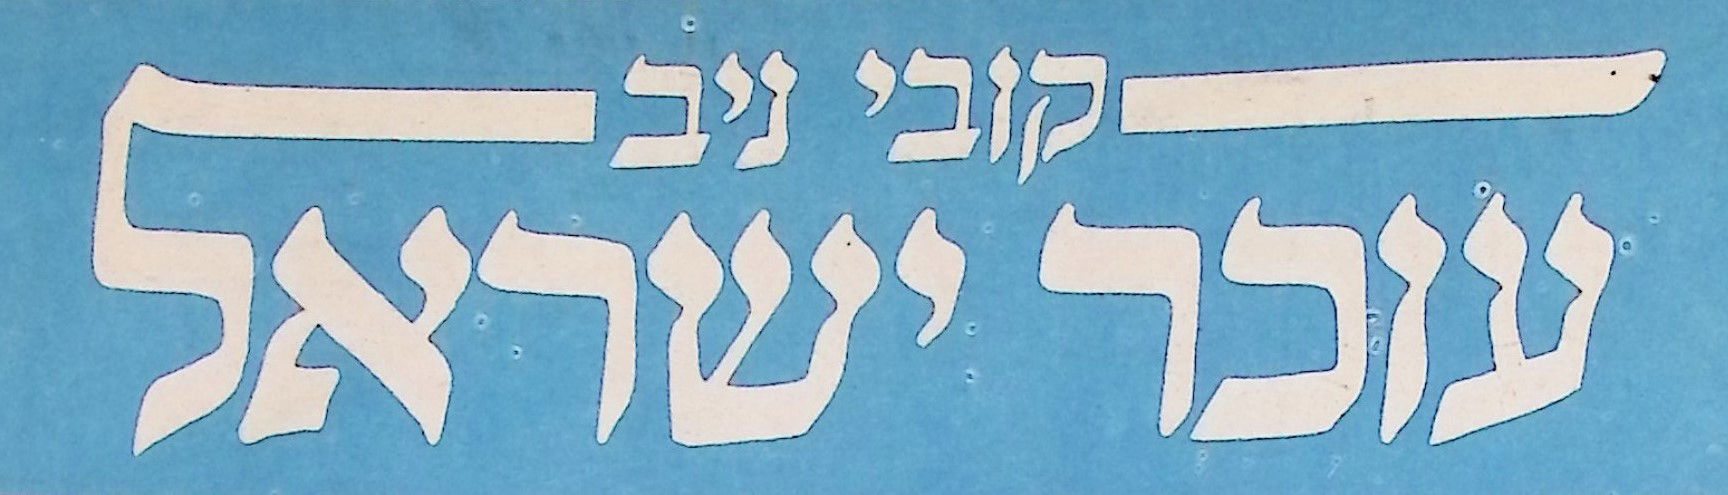 עוכר ישראל, עמוד סאטירה שבועי במוסף "חותם" של "על המשמר"